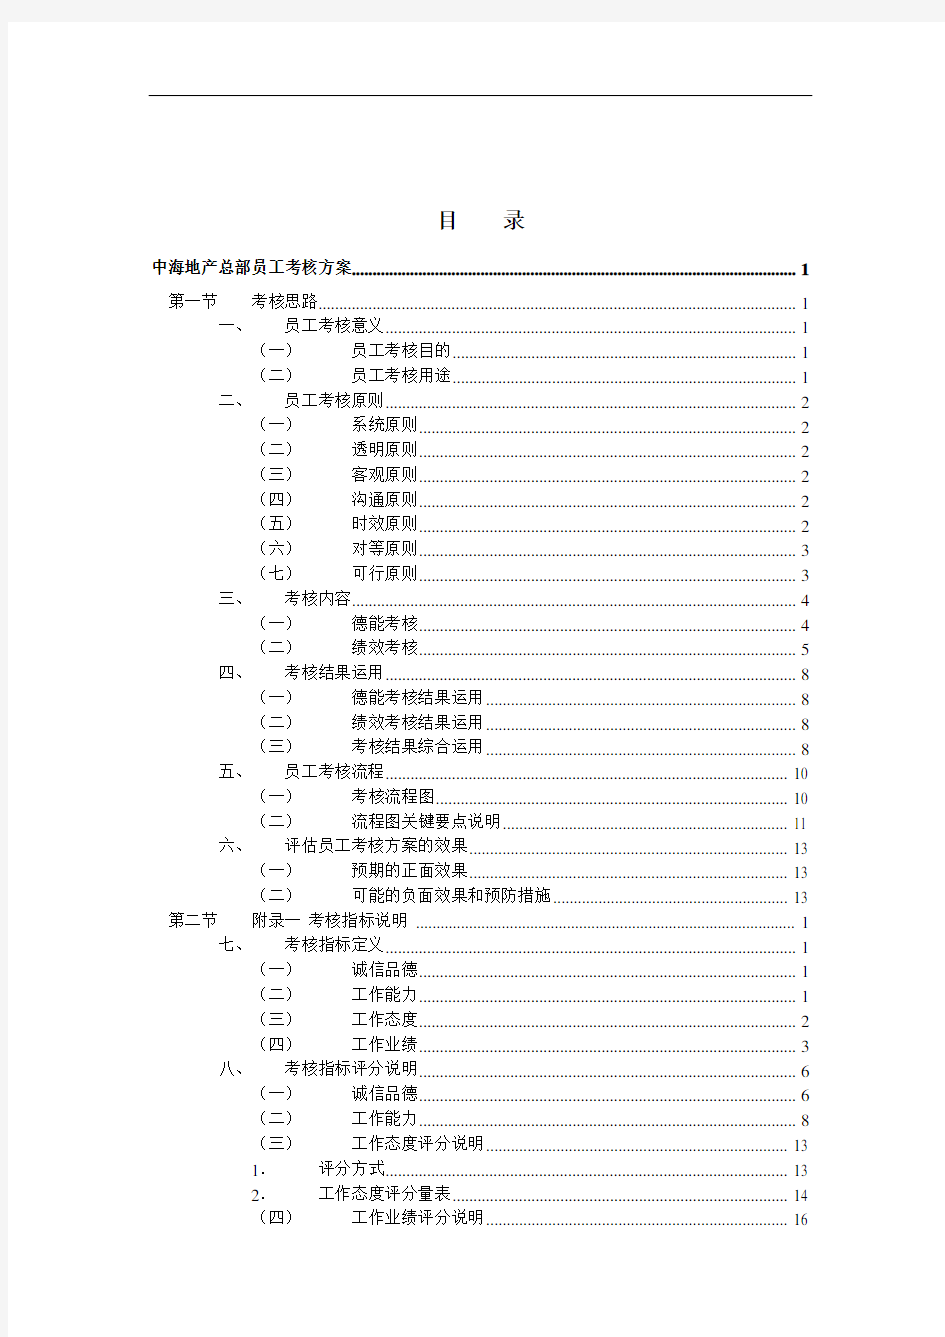 中海地产员工绩效考核方案_173页